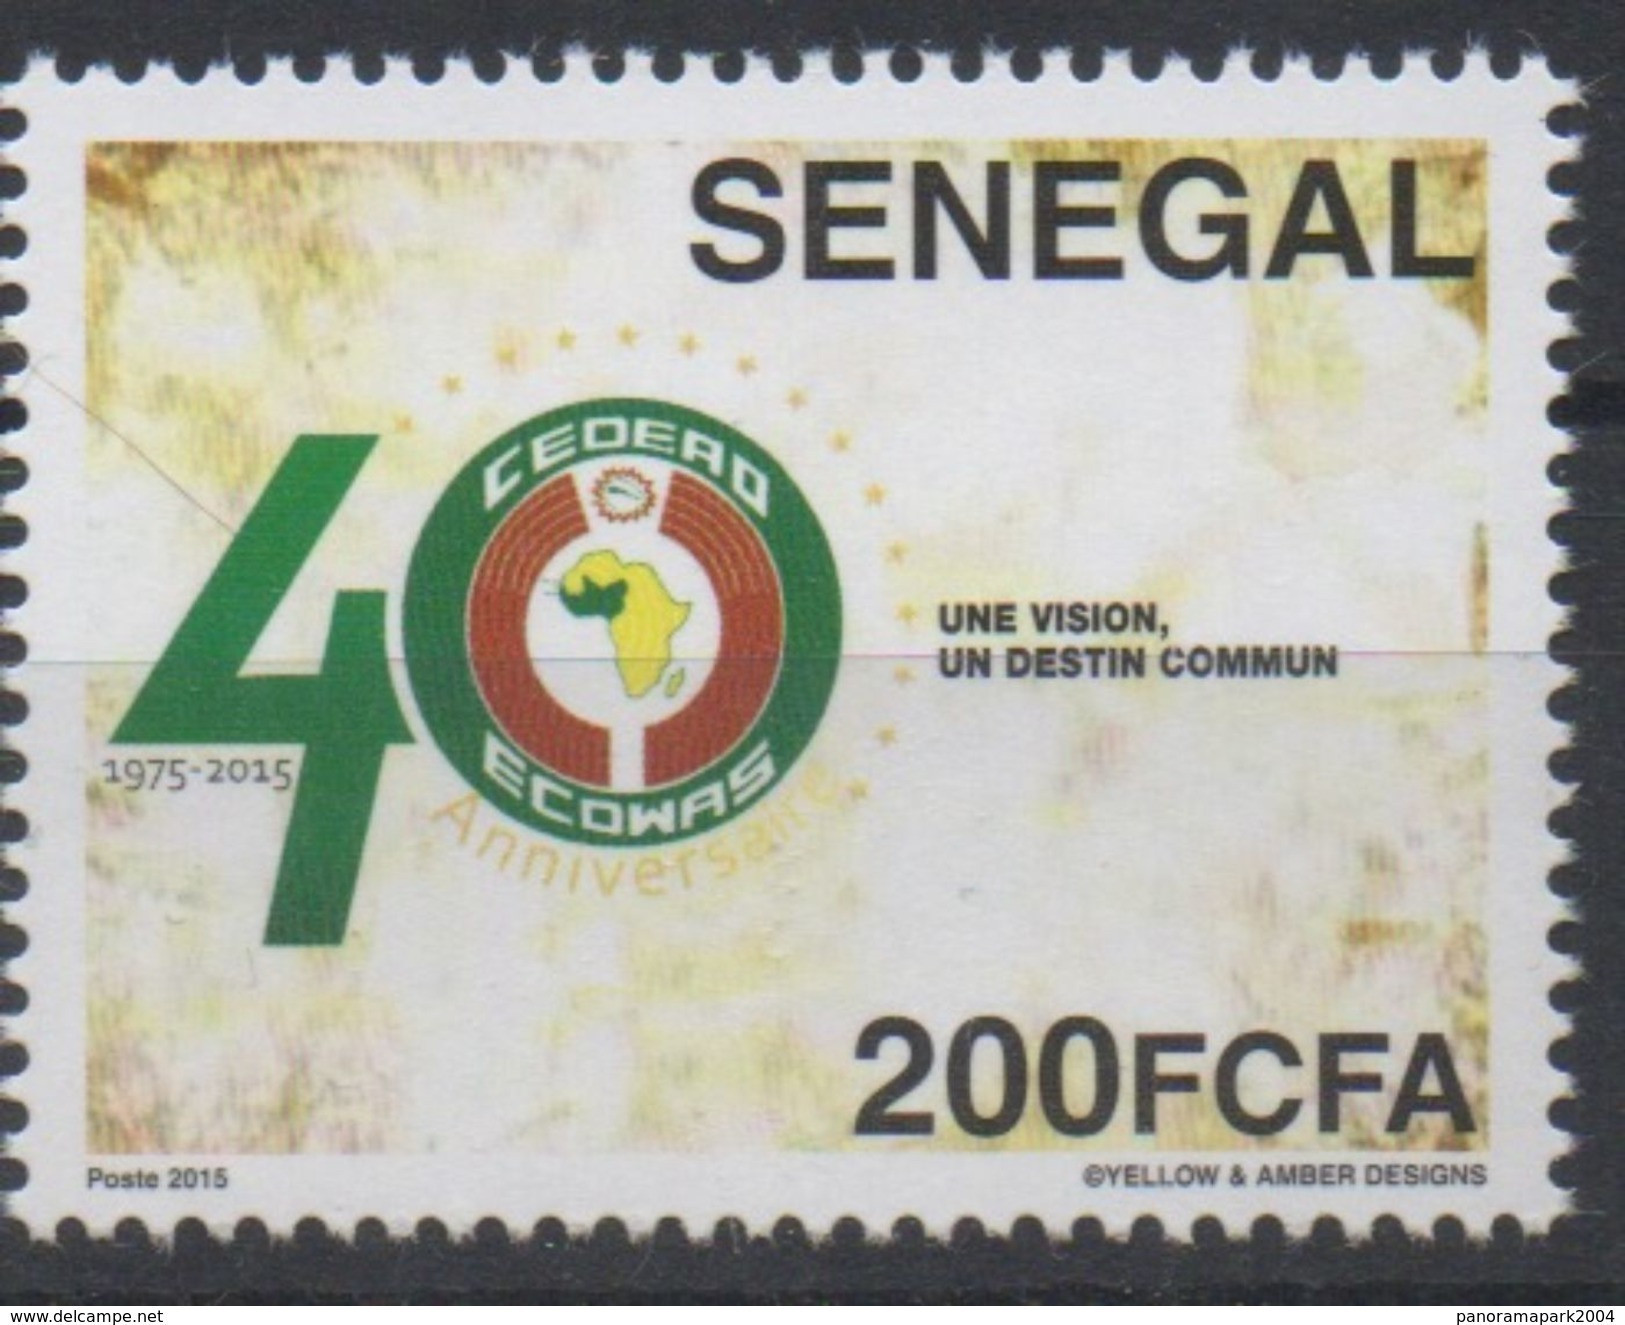 Sénégal 2015 Emission Commune Joint Issue CEDEAO ECOWAS 40 Ans 40 Years - Gemeinschaftsausgaben